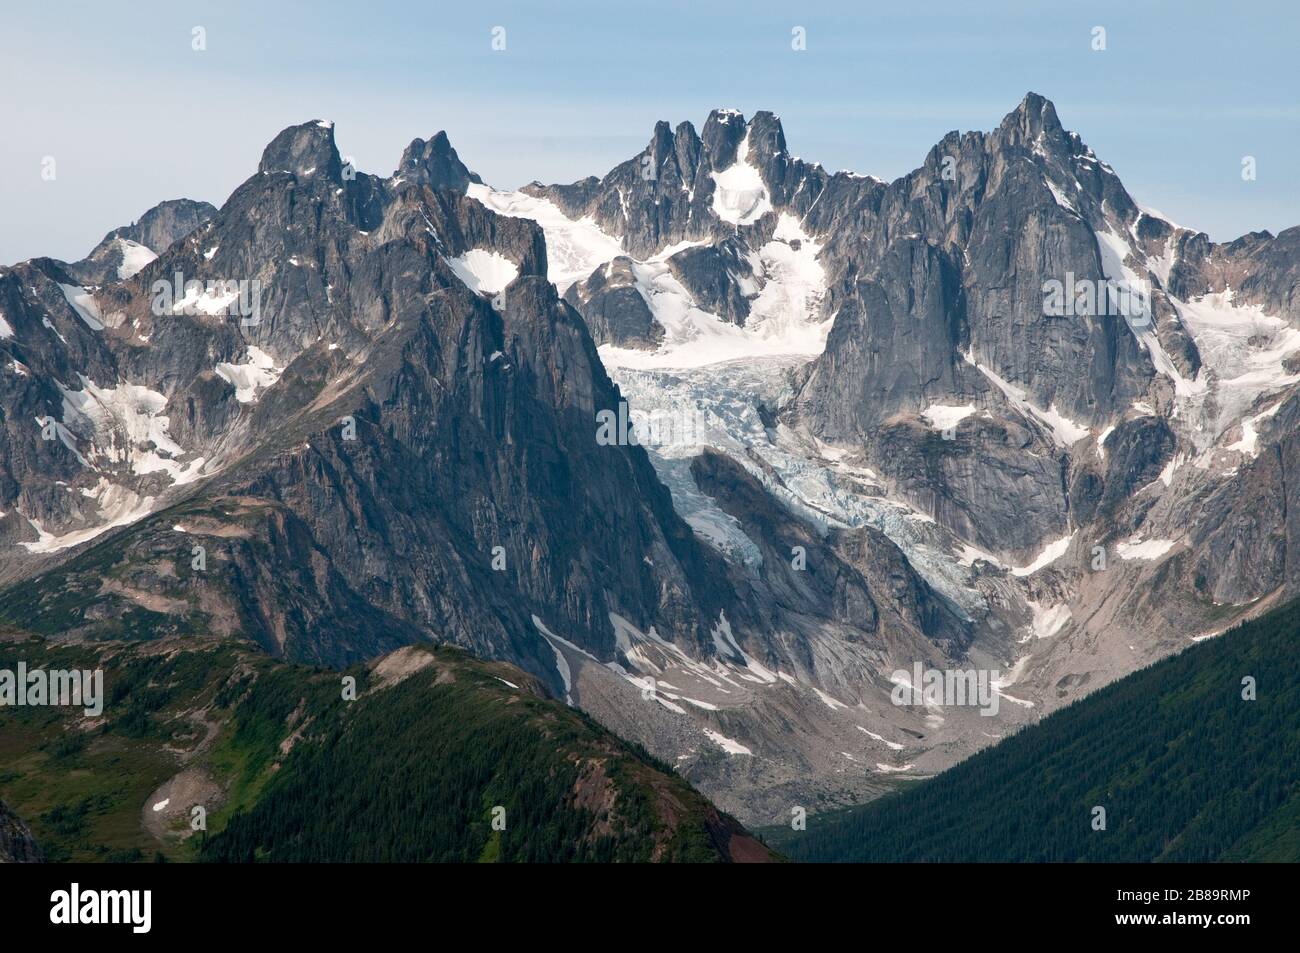 Valhalla Mountain, in den Bounary Ranges der Coast Mountains, oberhalb des Stikine River Valley, im Norden British Columbias, Kanada. Stockfoto